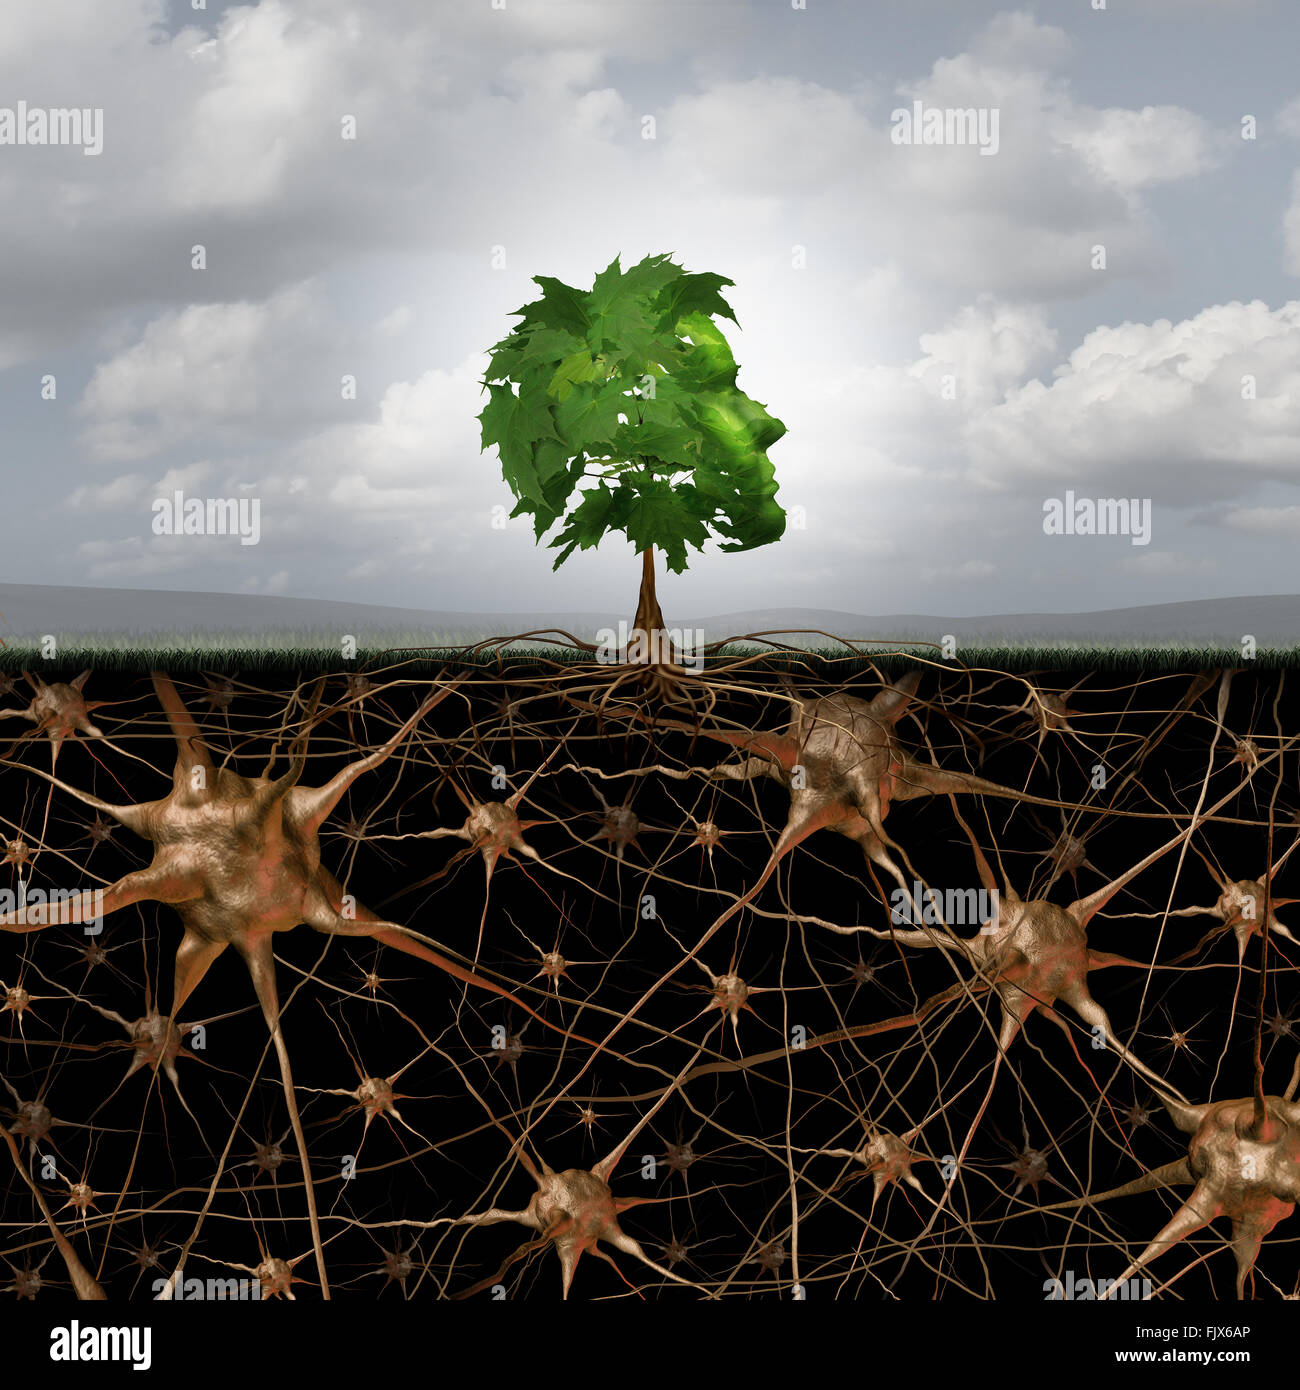 Neuron Gehirn Verbindung Konzept wie ein Baum in einer menschlichen Kopf Form mit Wurzeln geprägt als aktiv wachsende Neuronen mit Anschlüssen an die Anatomie des Nervensystems. Stockfoto